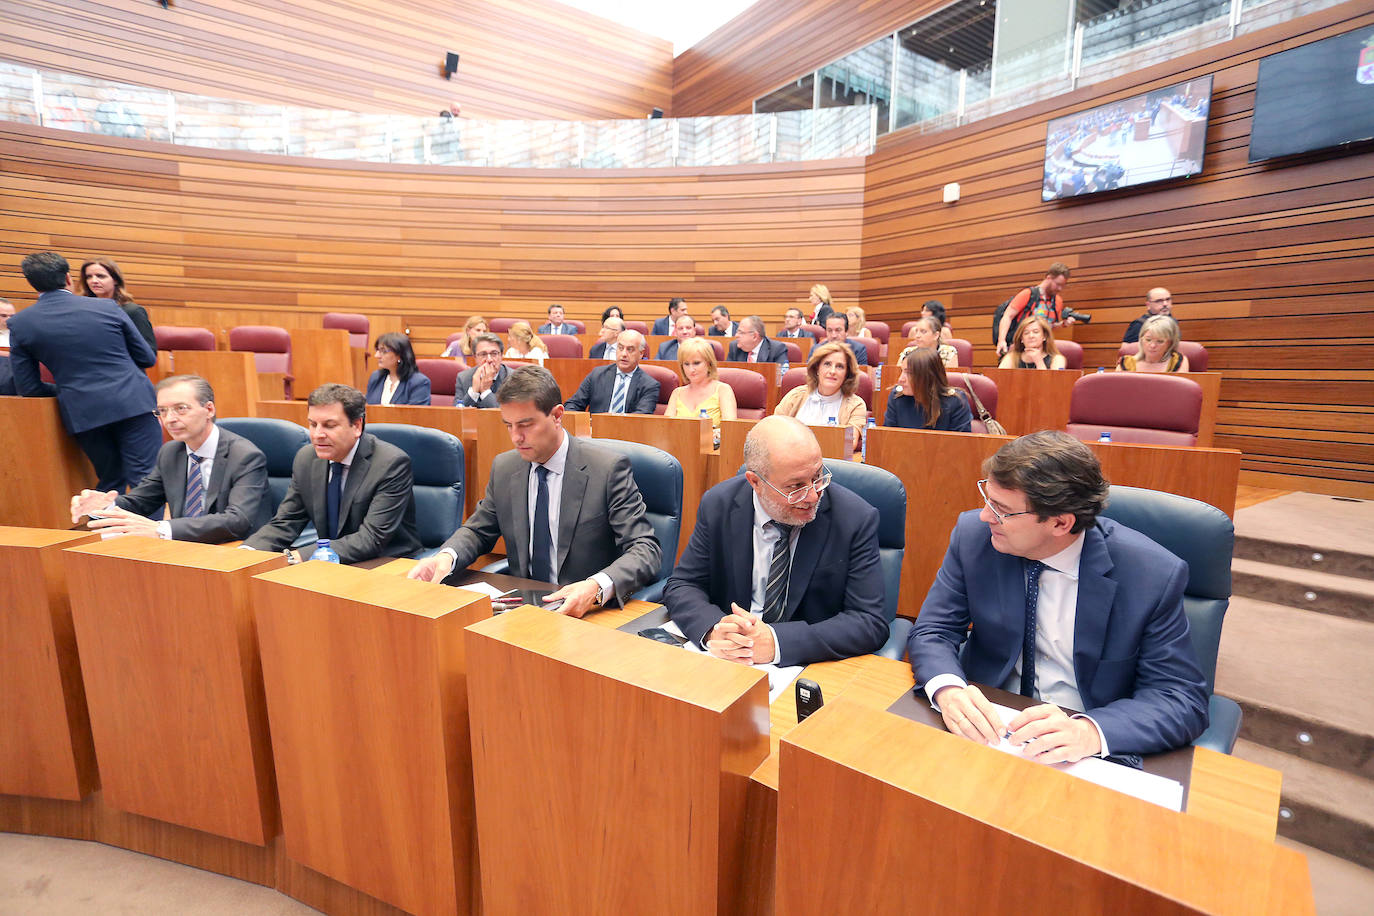 Fotos: Pleno extraordinario de designación de los senadores autonómicos y los vocales de la Comisión Mixta